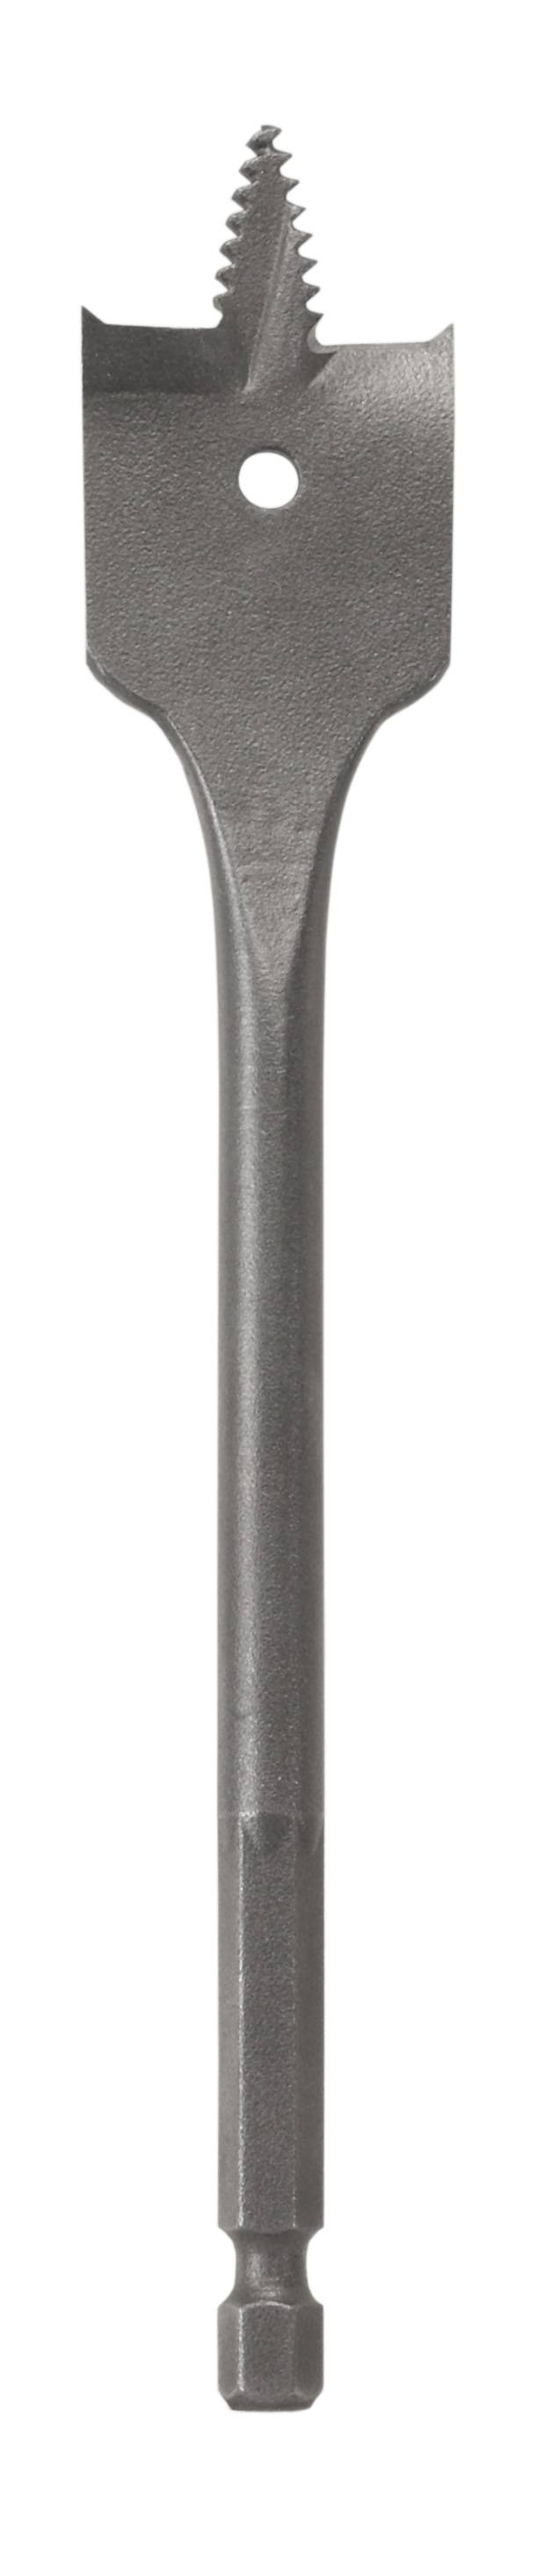 BOSCH Holz-Fräsbohrer 12 mm Gesamtlänge 152 mm 2609255330 Zylinderschaft 1 St. (2609255330)